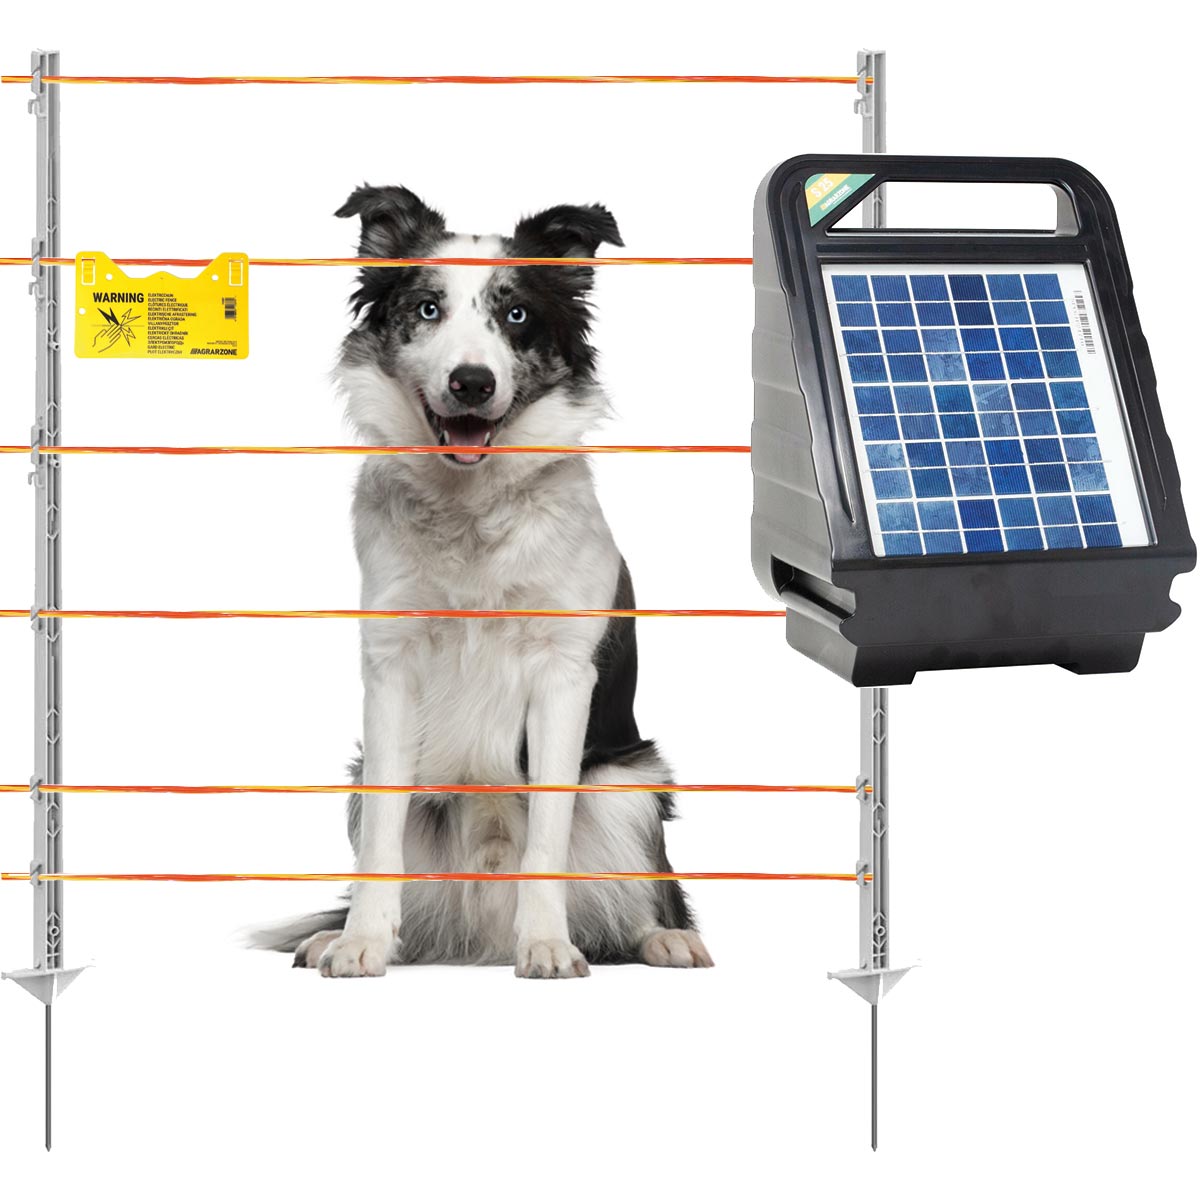 Agrarzone kit recinto per cani fotovoltaico S25 12V, 0,4j, filo elettrico 500 m, giallo/arancione